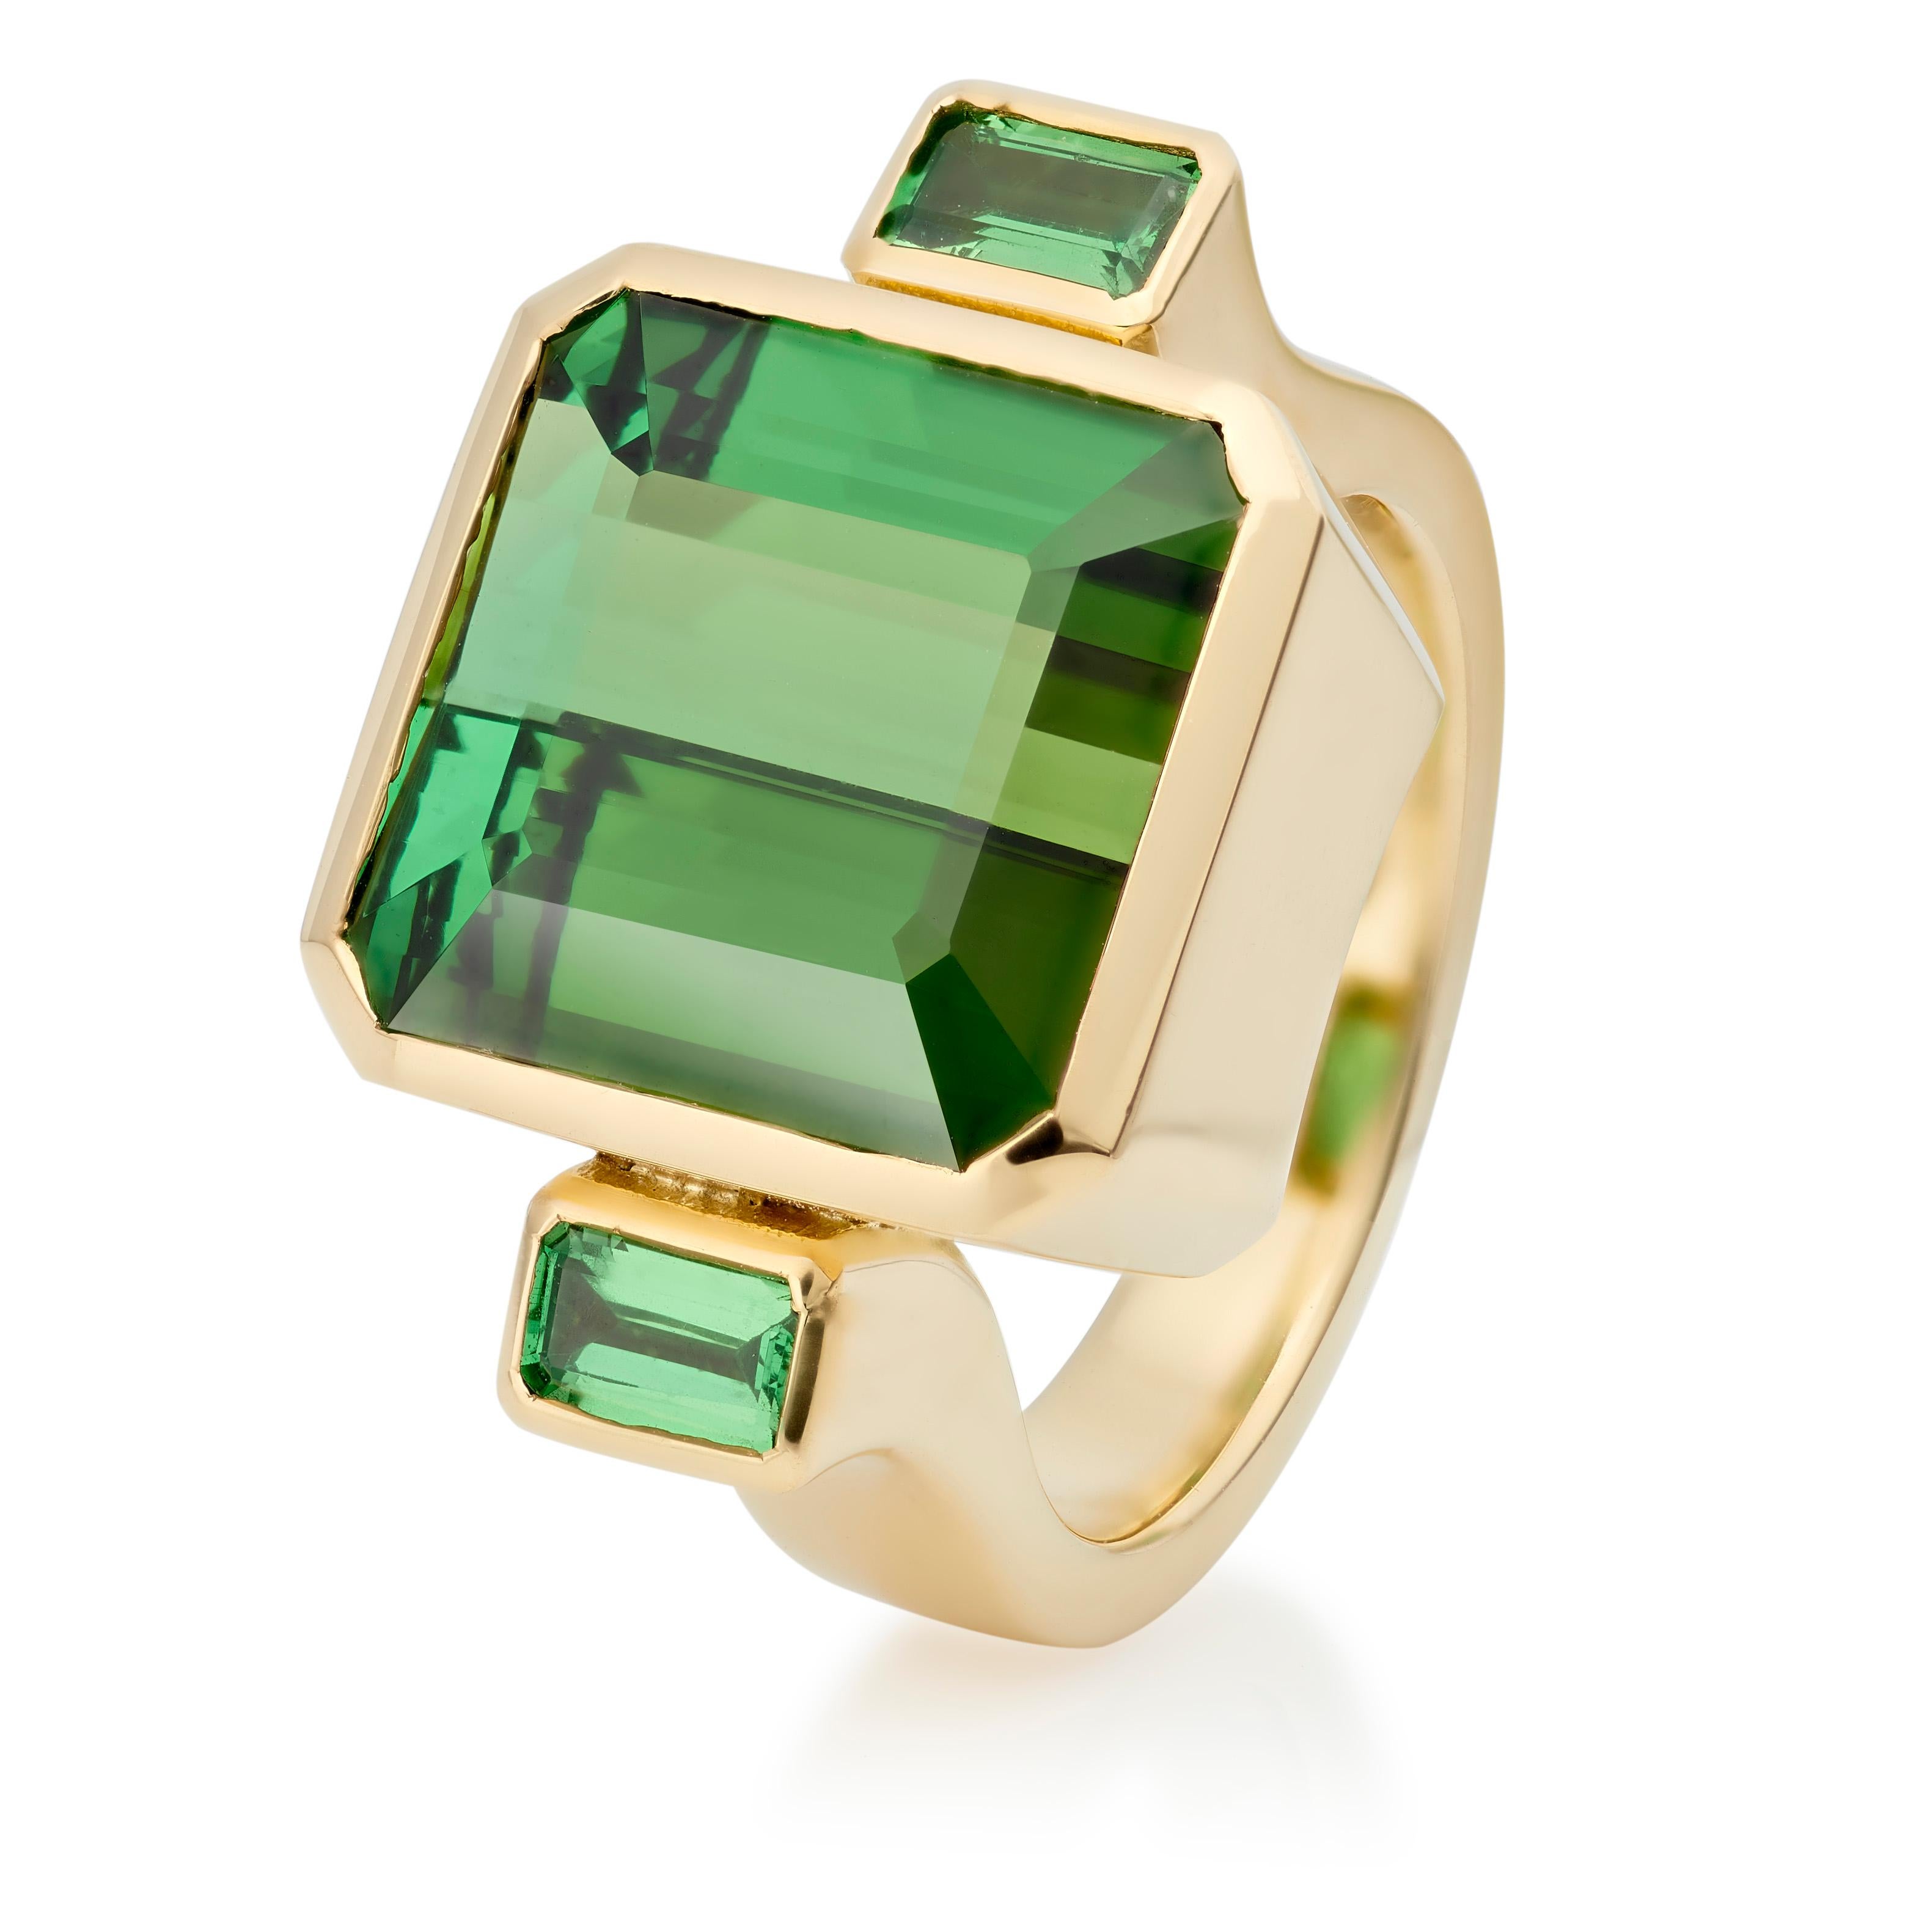 Der Bon Bon Ring ist einer der charakteristischen Ringe von Lilly Hastedt. Das Design dieses Rings folgt der Rechteckigkeit der Edelsteine.  Der zentrale grüne Turmalin ist ein riesiger Stein mit einem Gewicht von 11,56 ct. und ist mit einem Paar